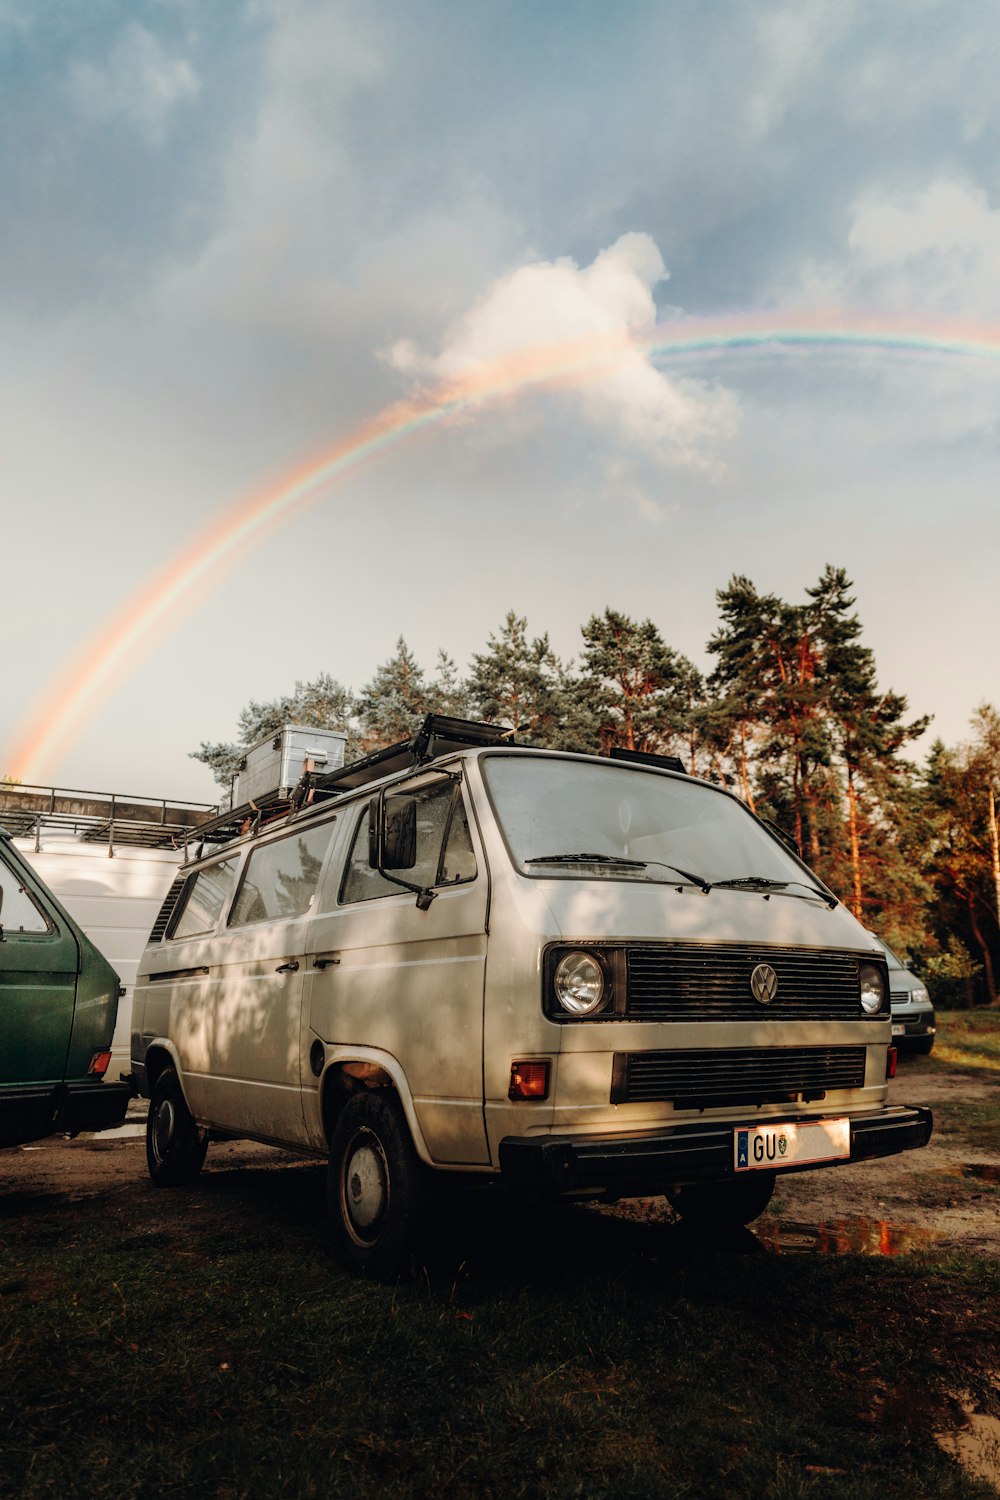 Un furgone parcheggiato accanto a un furgone con un arcobaleno sullo sfondo